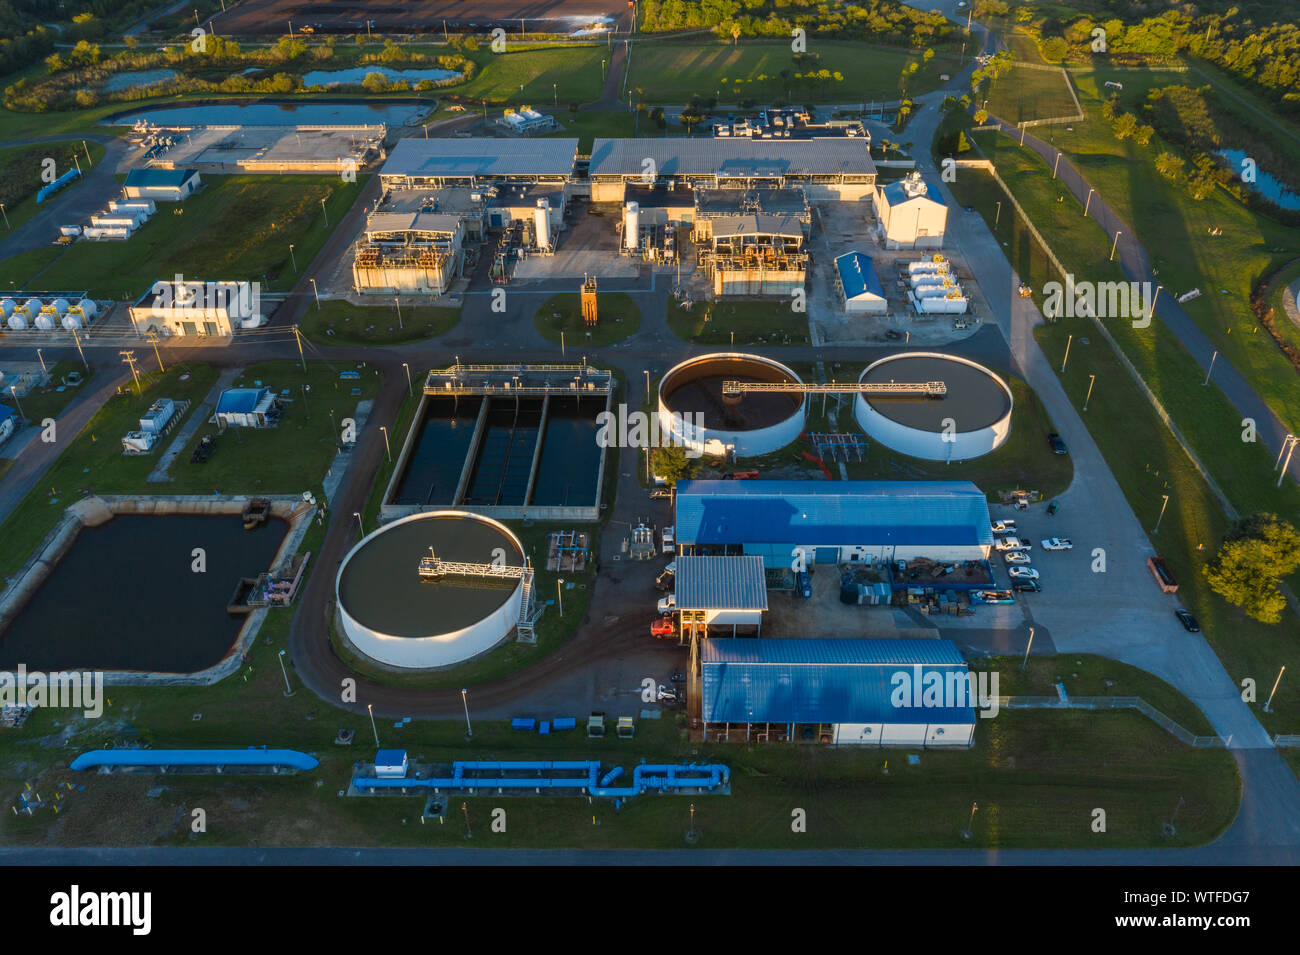 Vista aérea de la planta Regional de tratamiento de Aguas superficiales de Tampa Bay en Tampa, Florida. Foto de stock